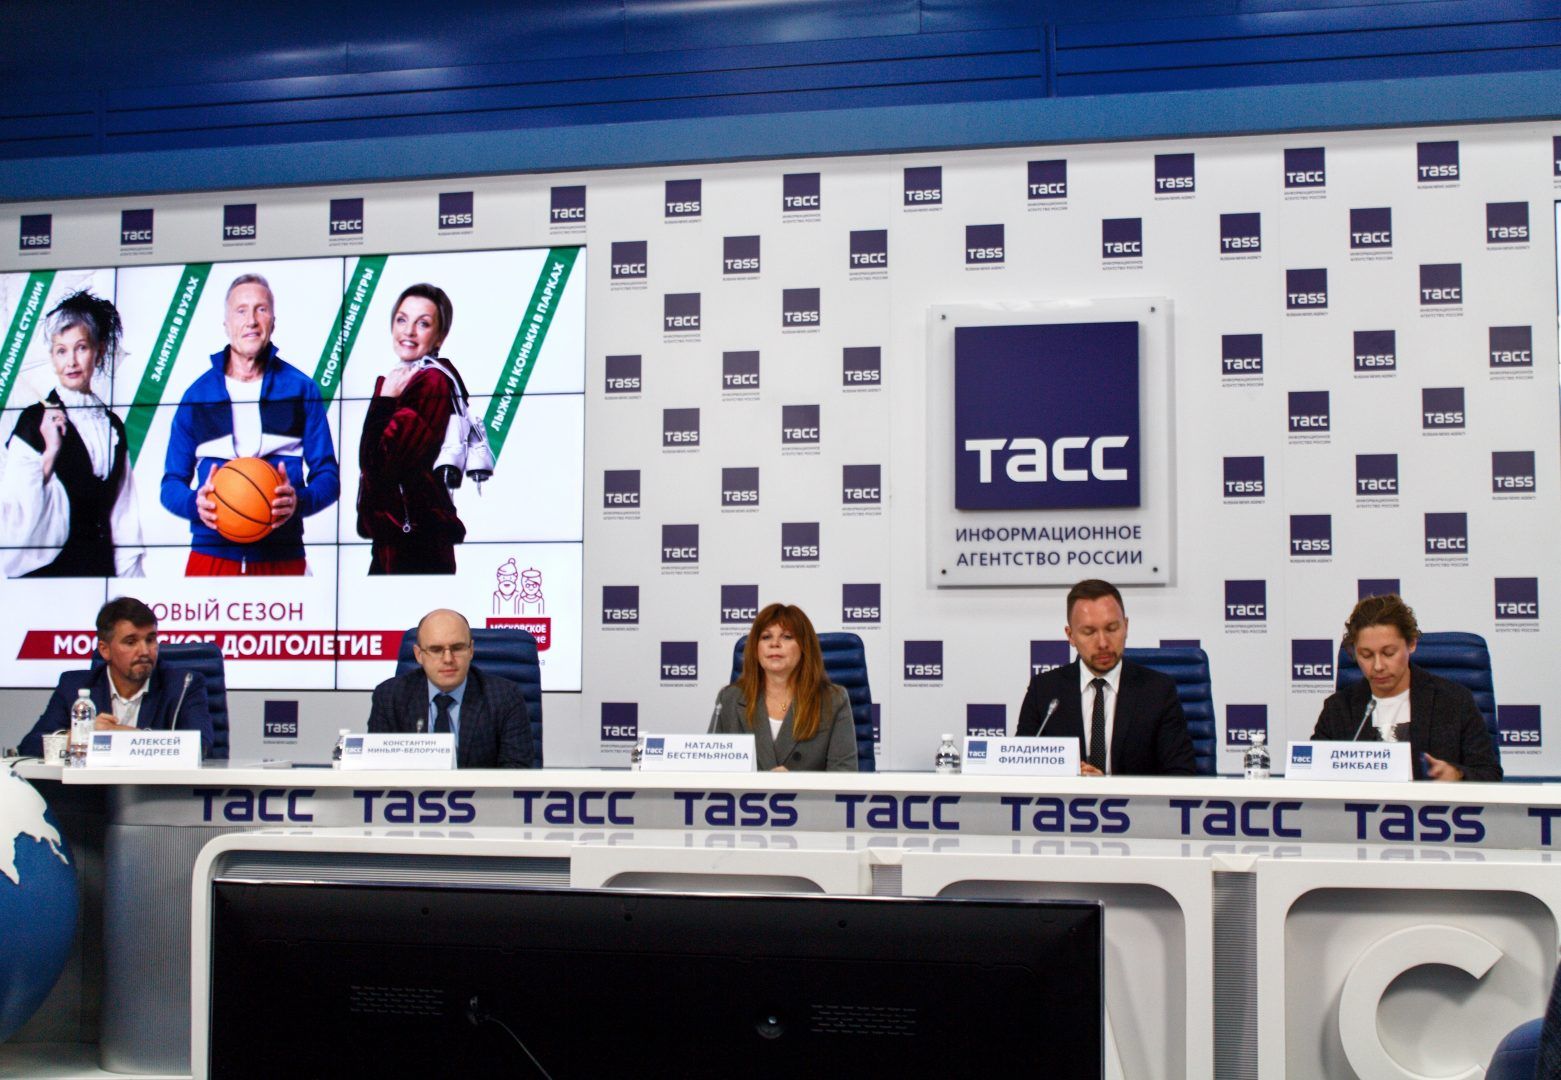 Пресс-конференция «Московское долголетие» состоялась в информационном агентстве «ТАСС». Фото: Елена Наумова